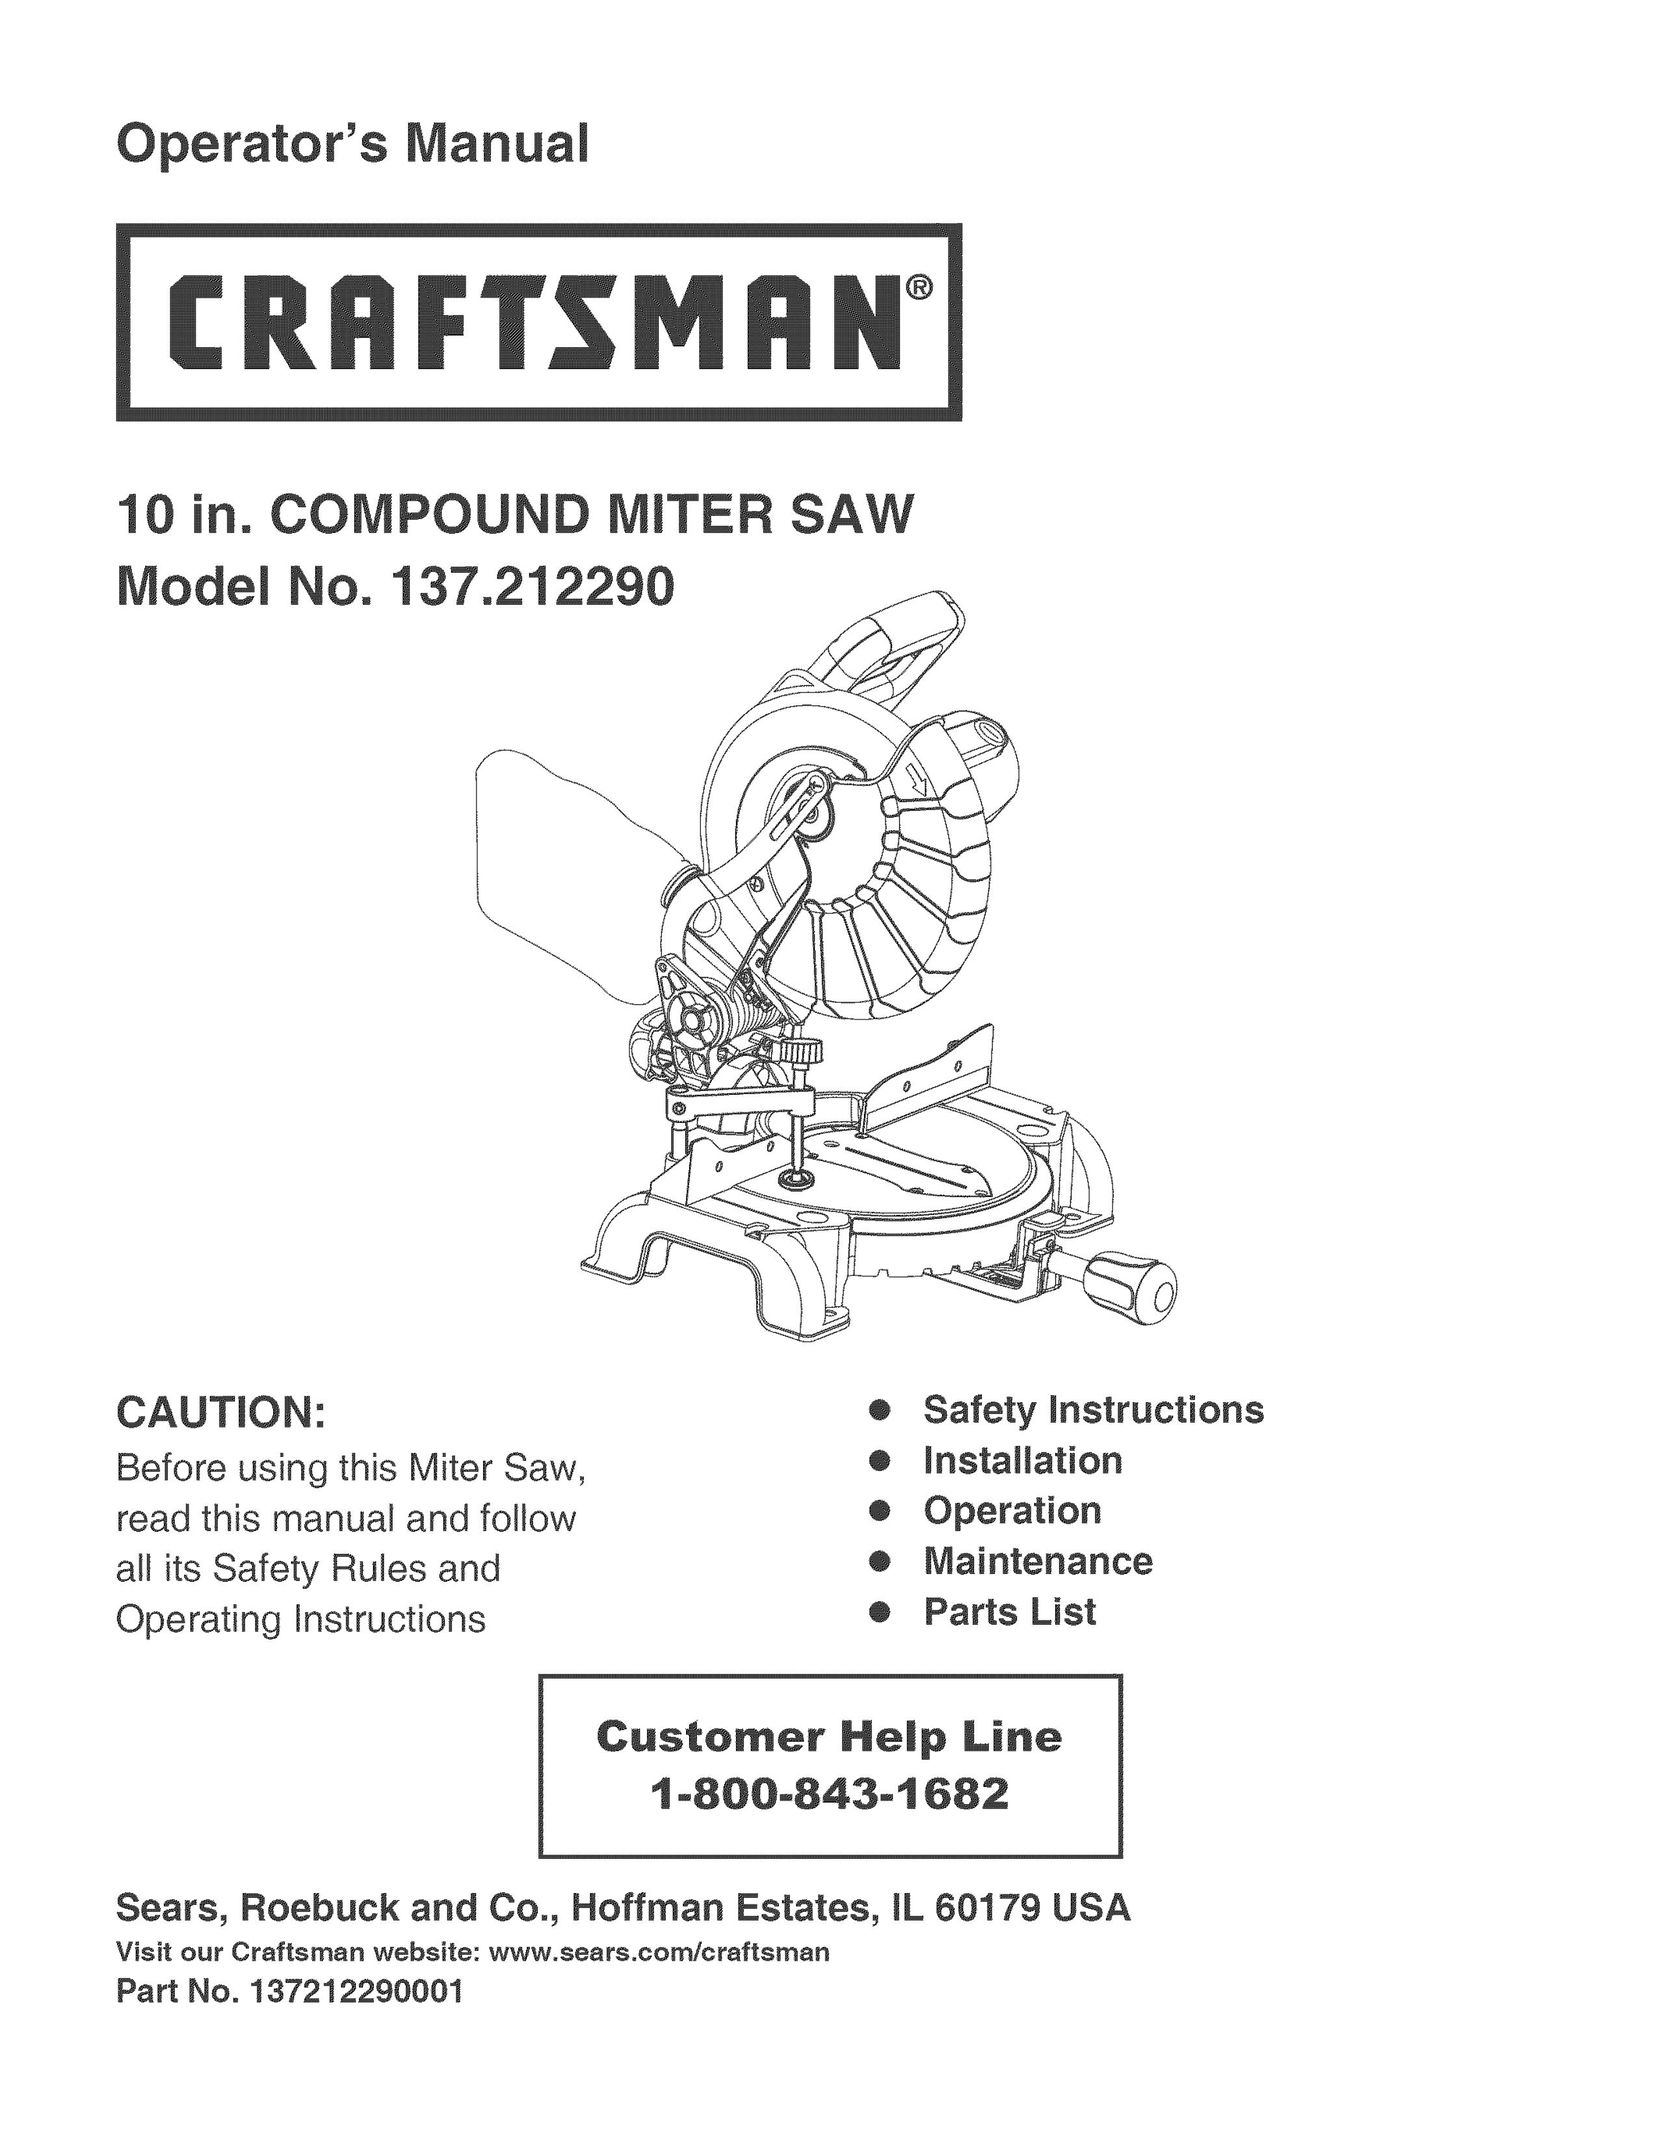 Craftsman 137.21229 Saw User Manual